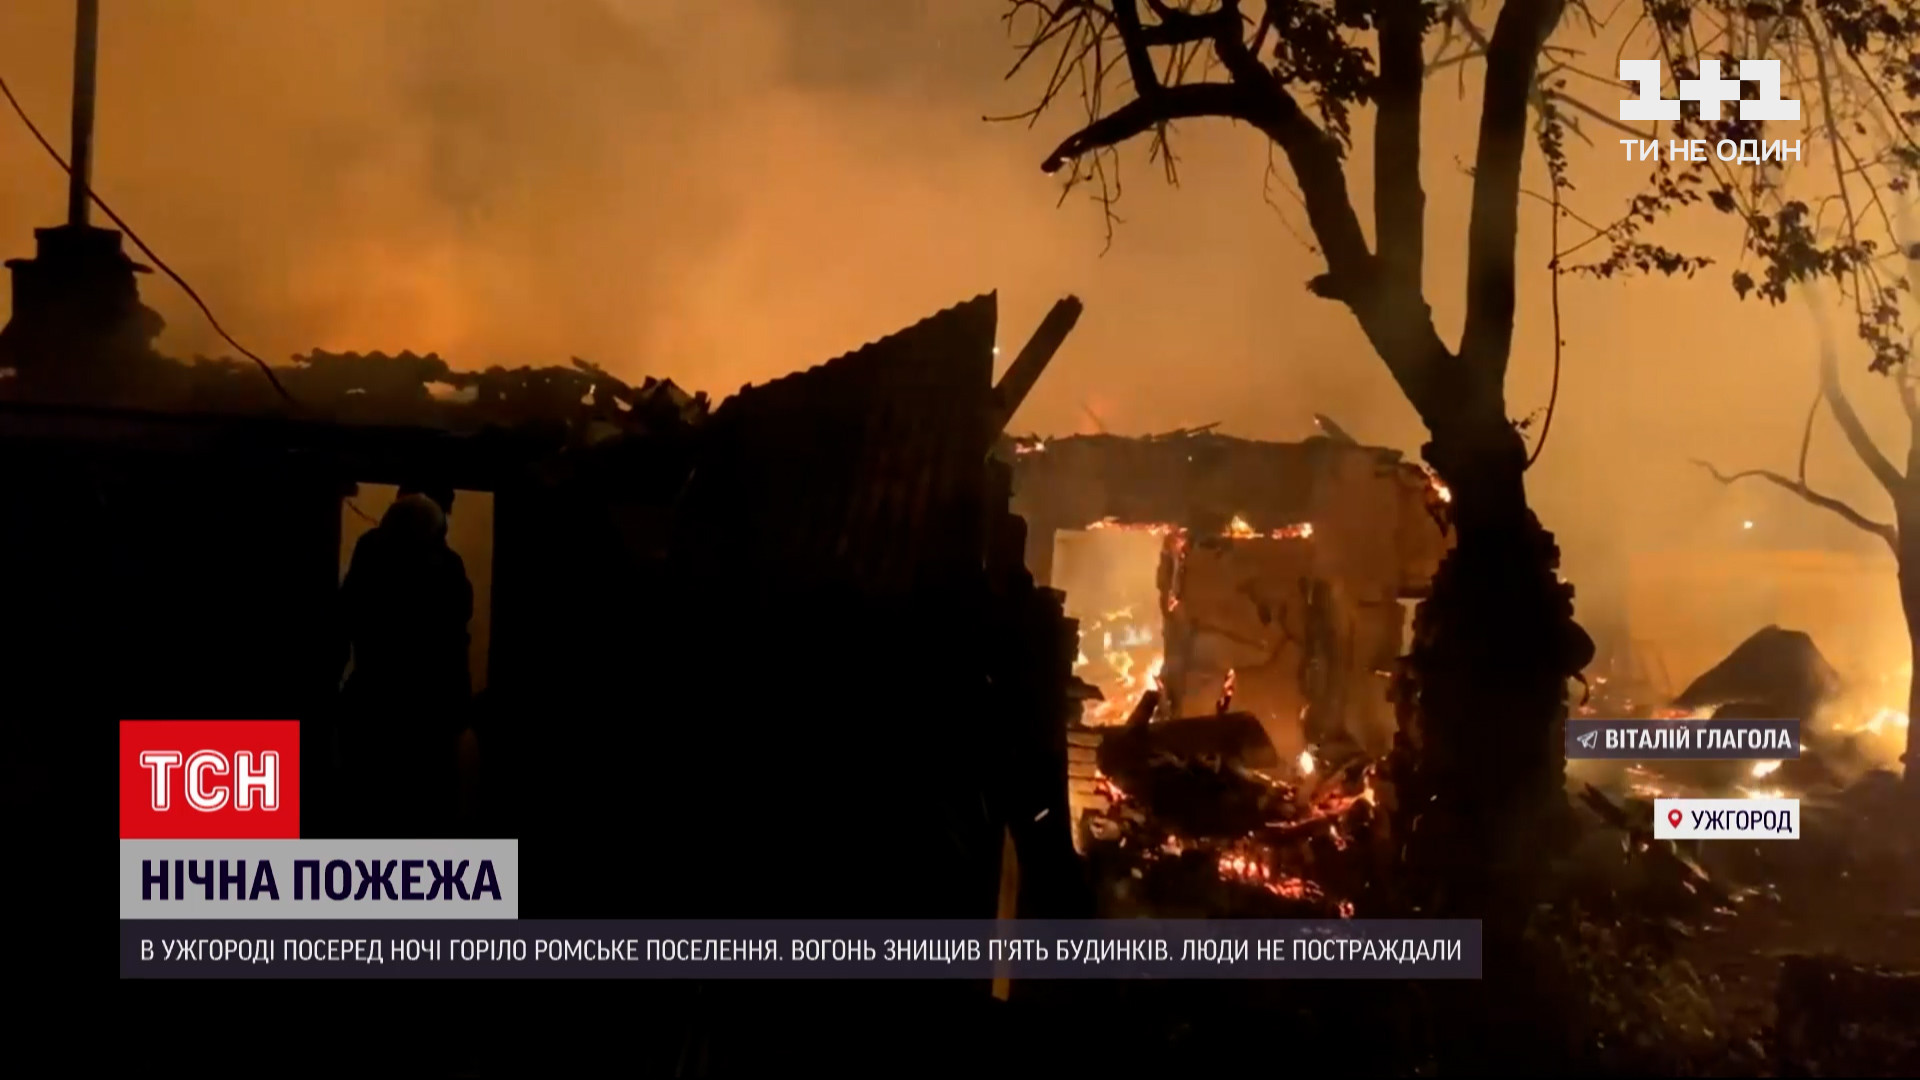 В Ужгороде горел ромский лагерь (фото, видео) — УНИАН